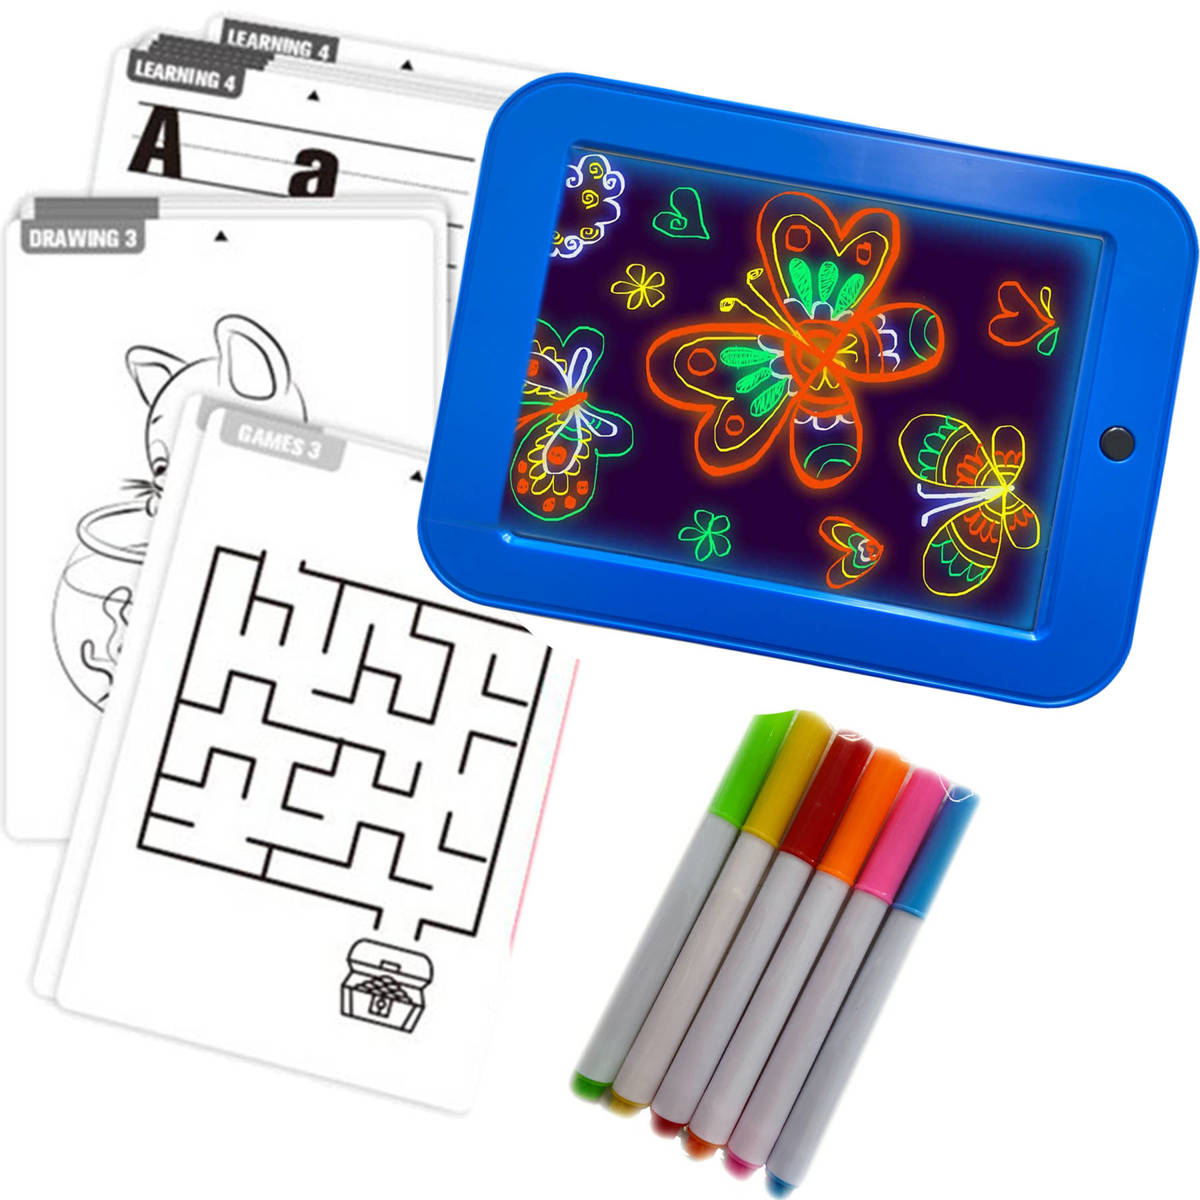 Tablet Graficzny Do Rysowania - Magiczna tablica podświetlana + 6 neonowych pisaków